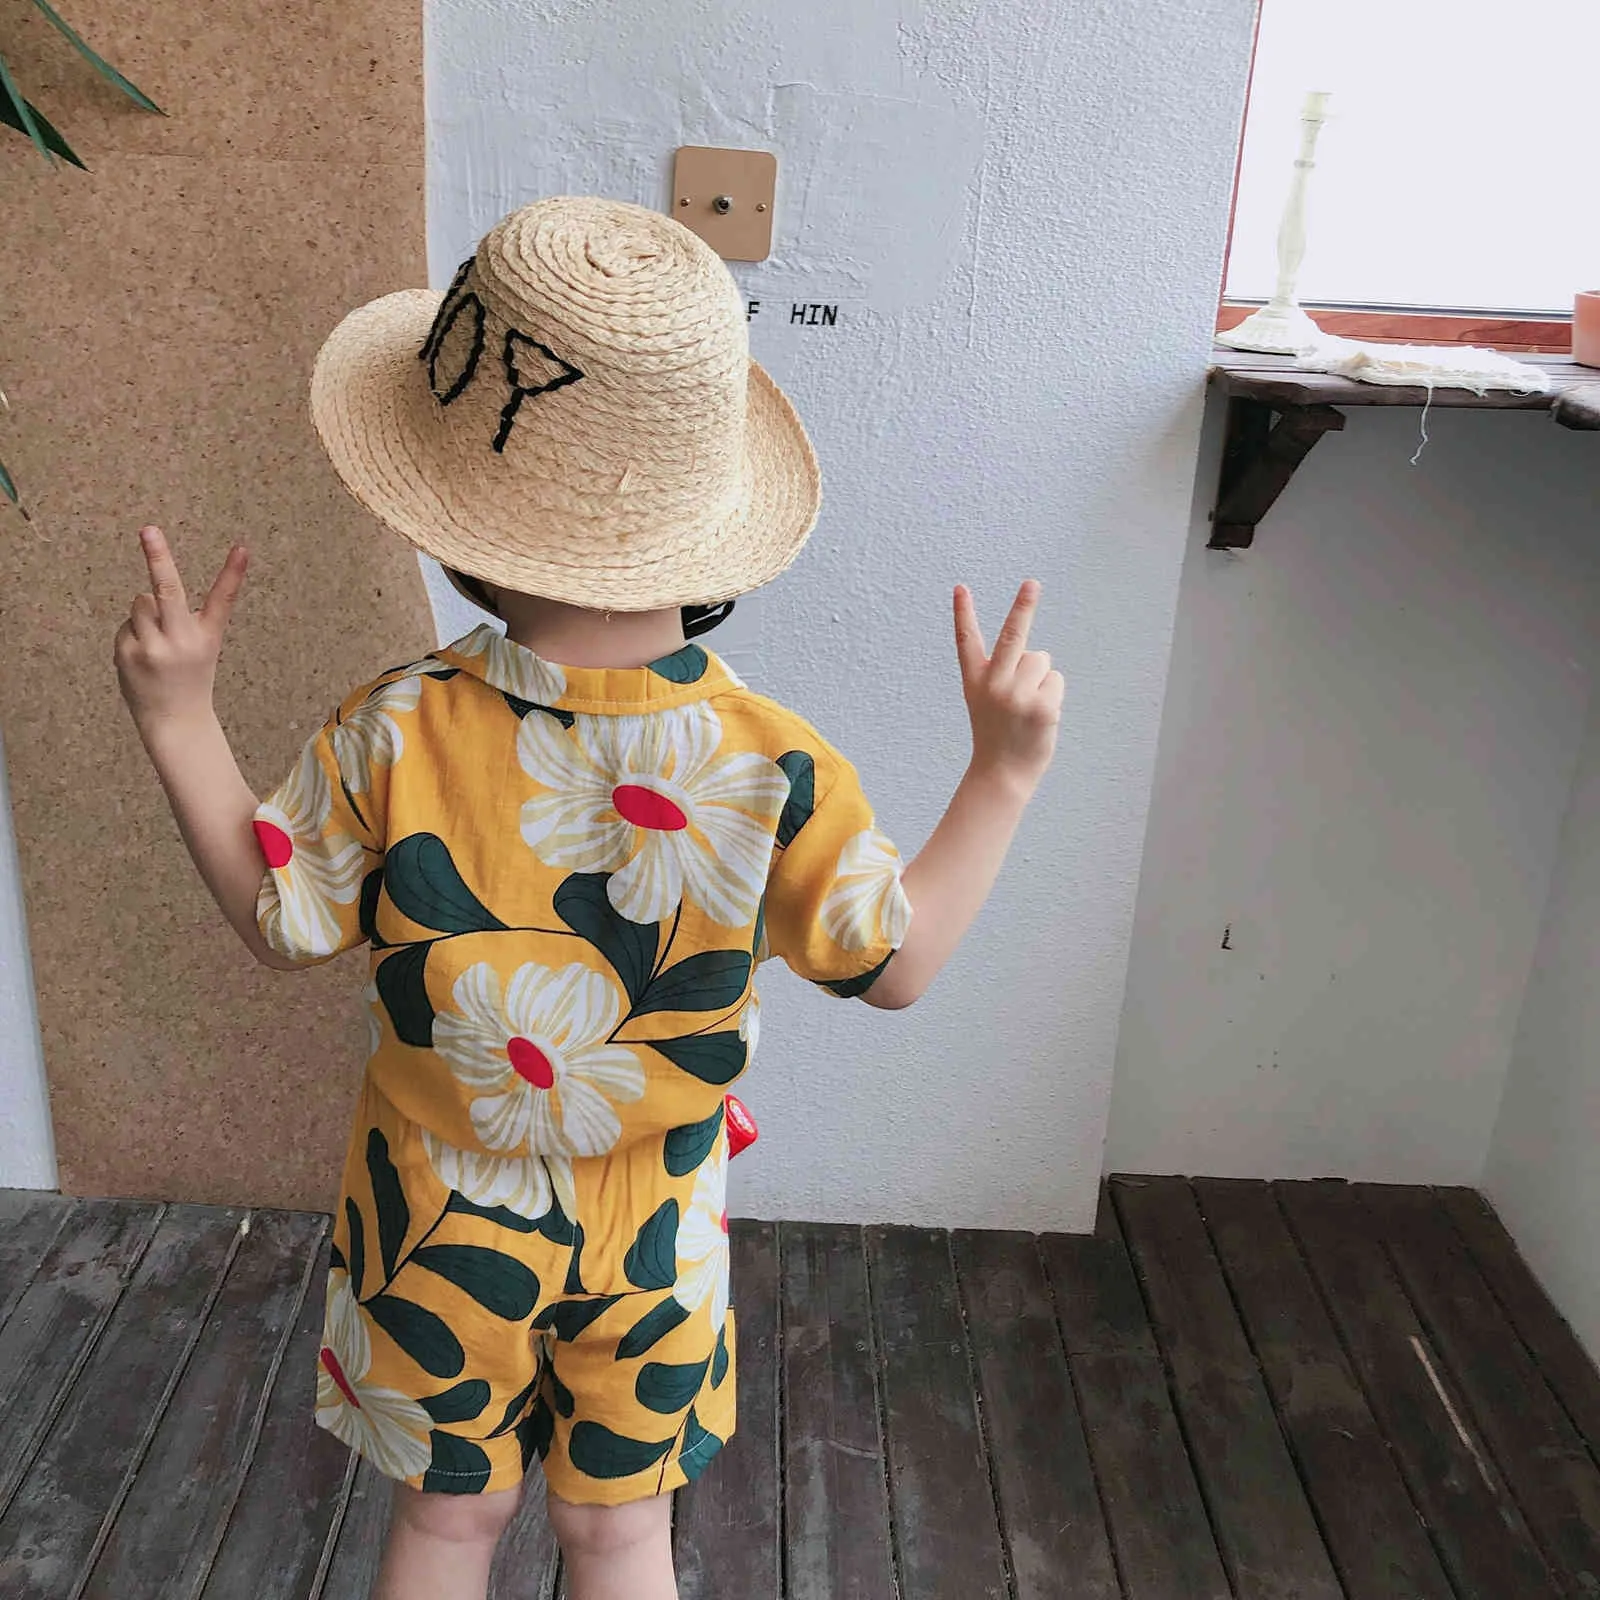 Letnia Moda Chłopcy Odzież Floral Beach Styl Soft Toddler Oddychająca T Shirt + Spodenki 2 sztuk Zestaw 210515